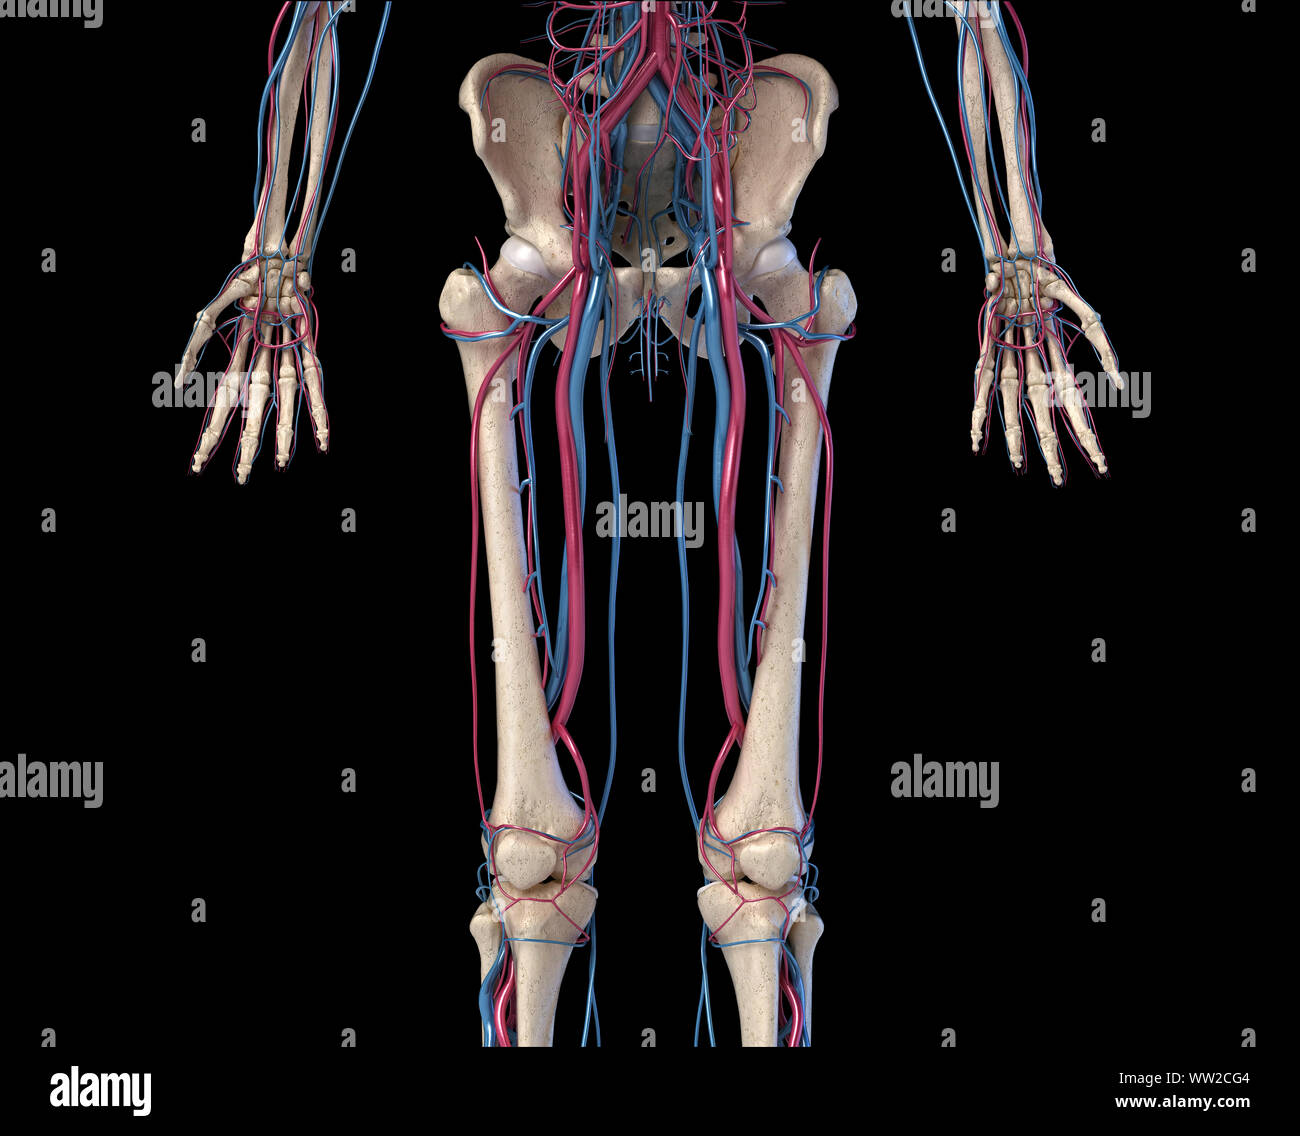 Menschliche Körper Anatomie. 3D-Darstellung der Hüfte, Beine und Hände Skelett- und Herz-Kreislauf-System. Von vorne betrachtet. Auf schwarzem Hintergrund. Stockfoto